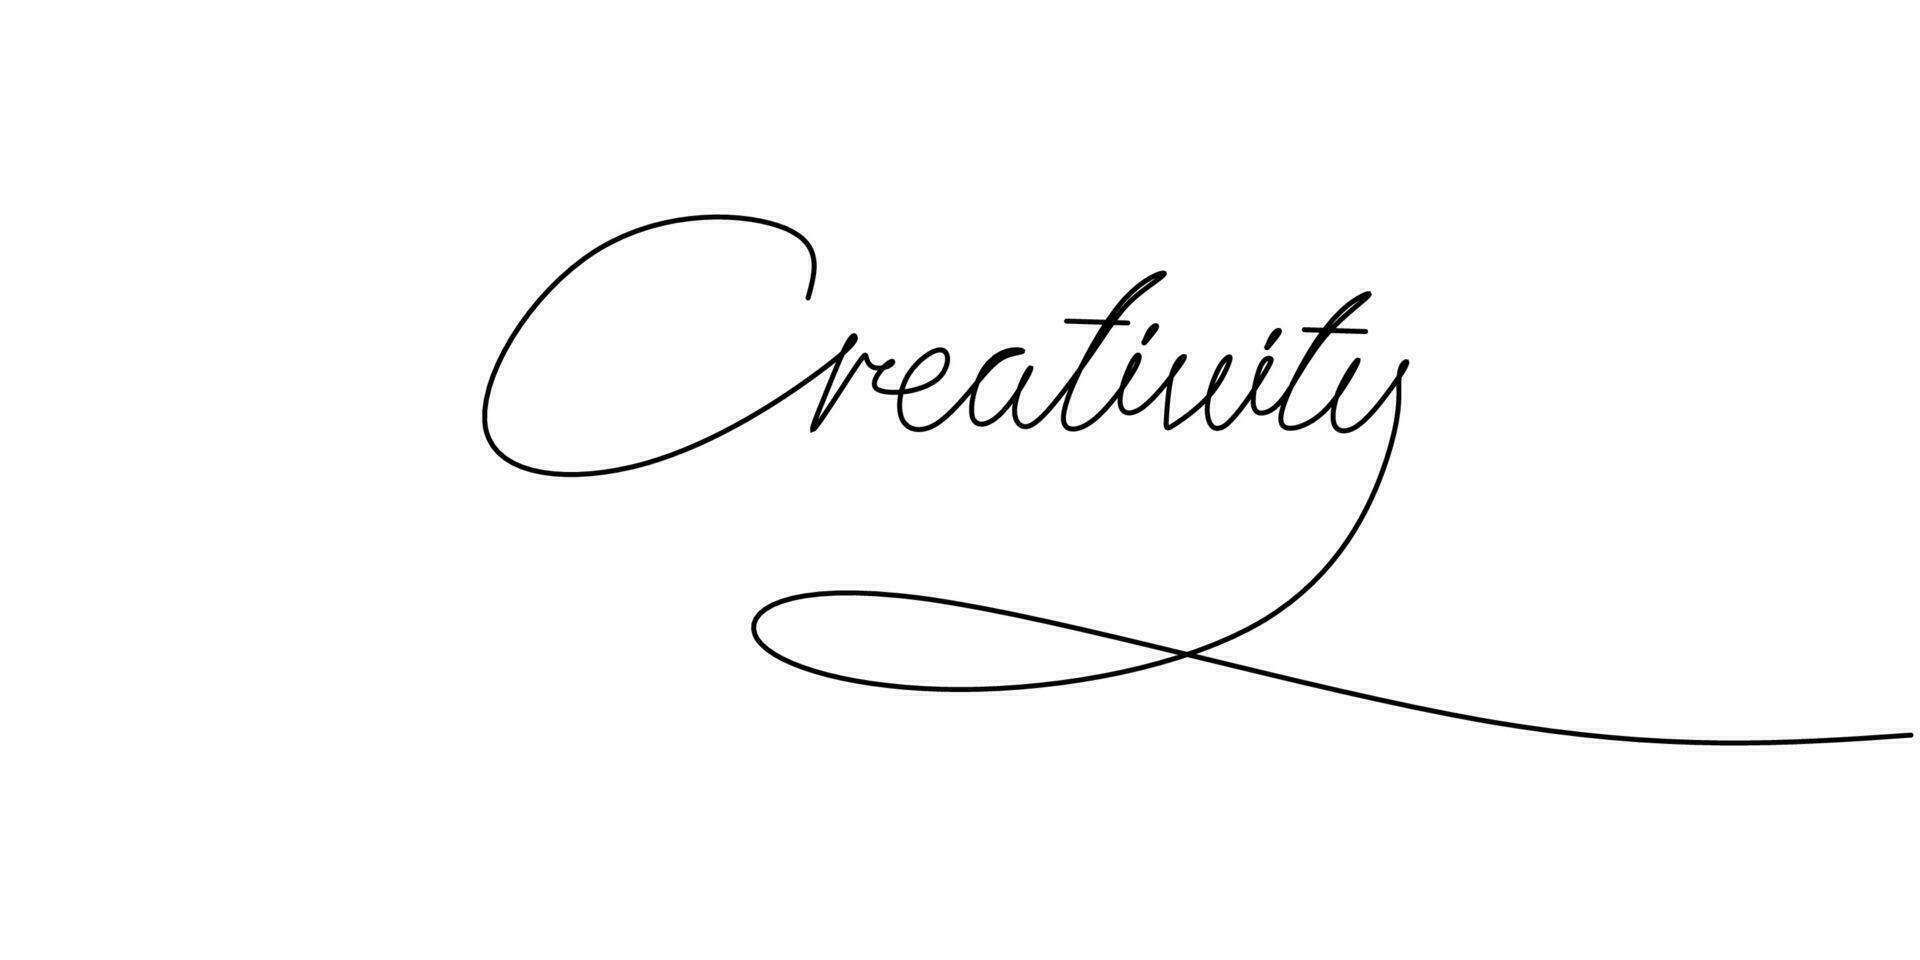 uno continuo línea dibujo tipografía línea Arte de creatividad palabra vector